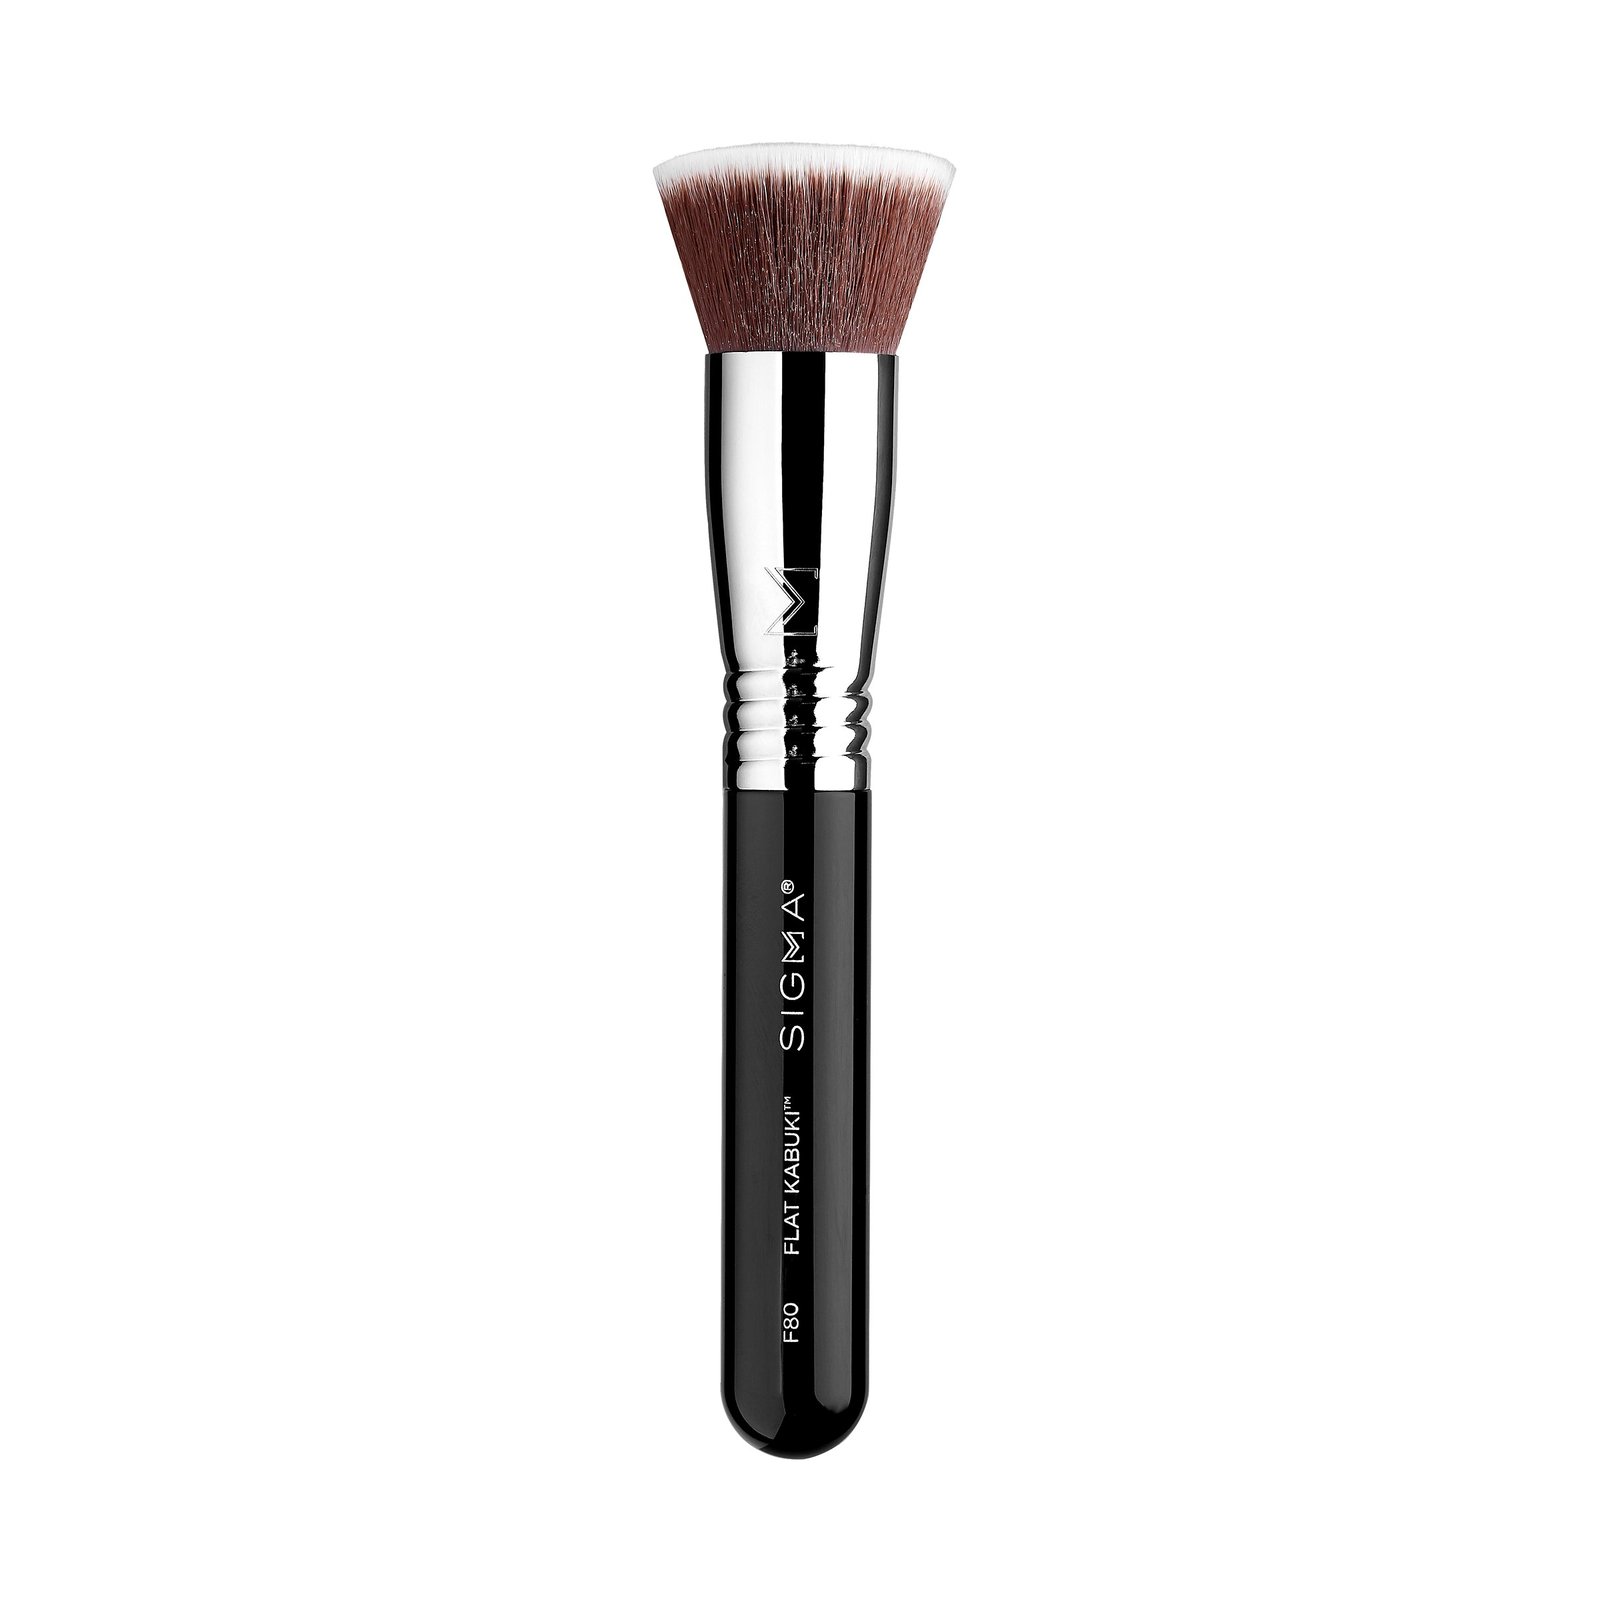 Sigma Beauty F80 Flat Kabuki™ Makeup Brush 1 st